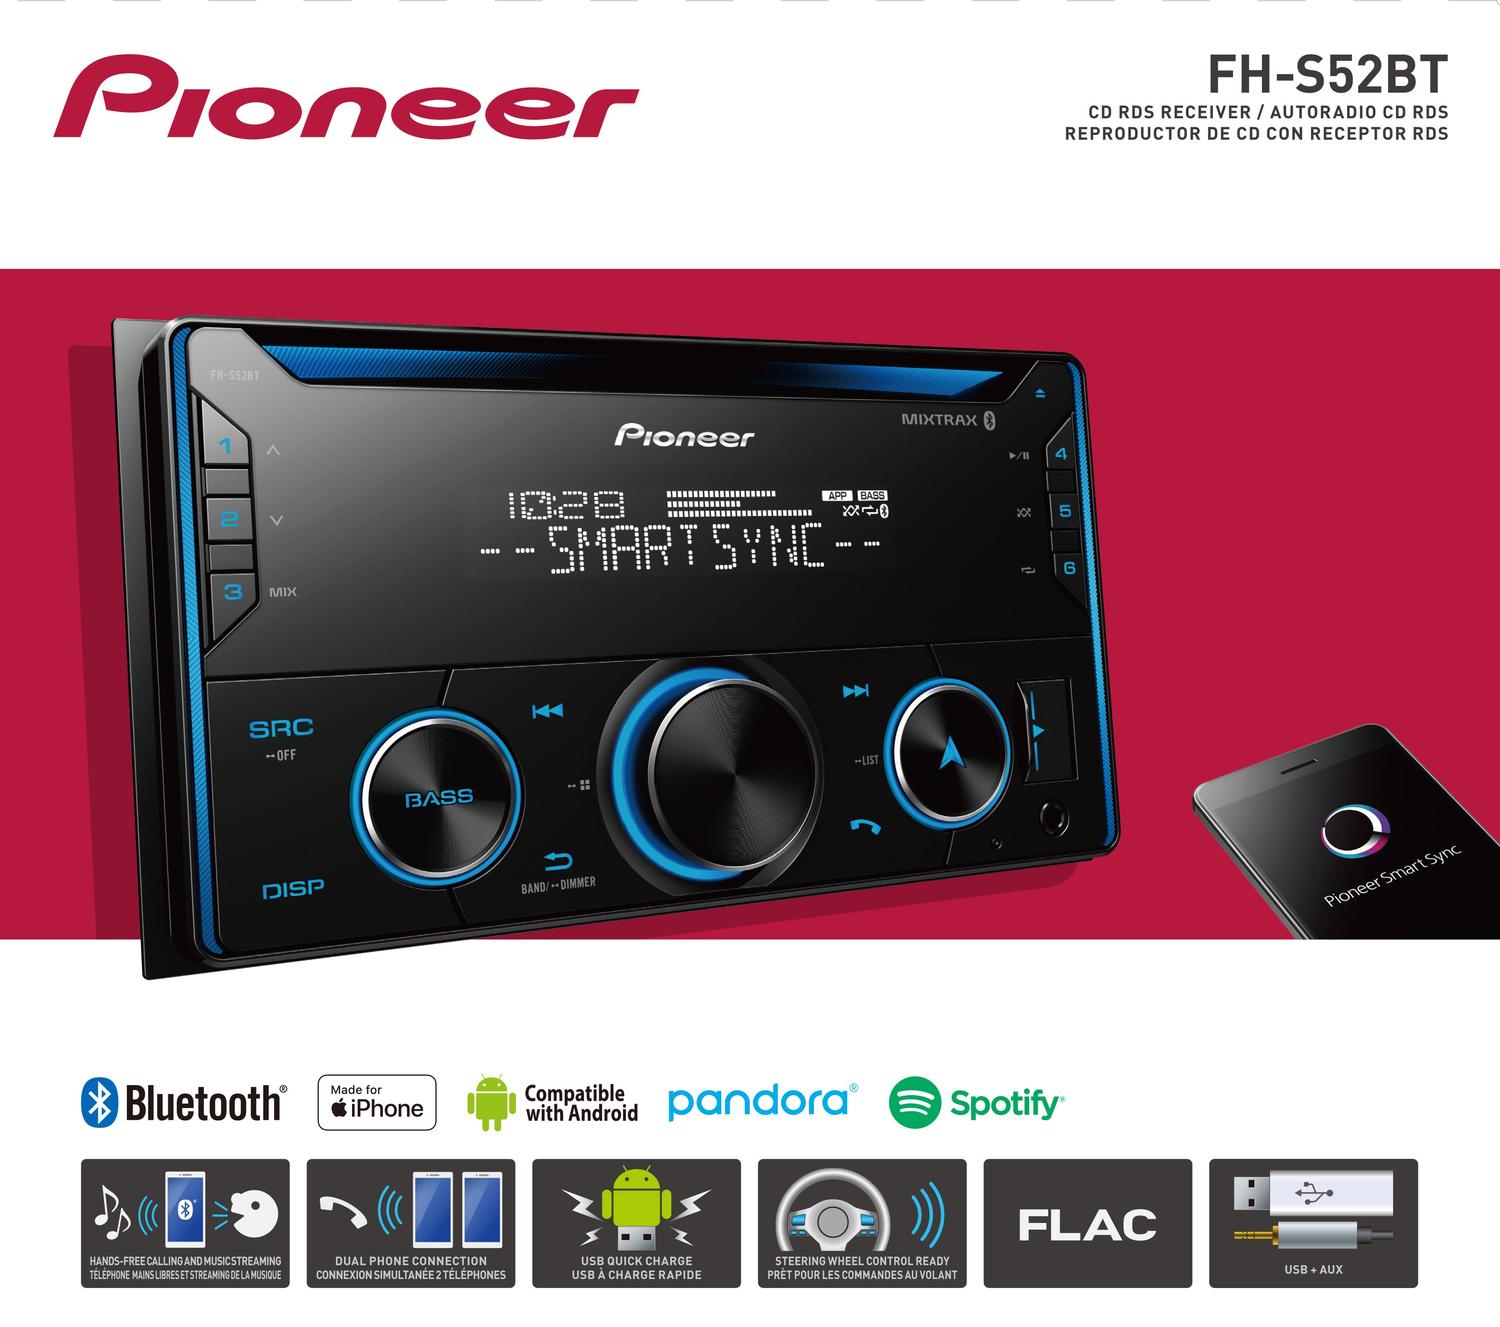 Autoestéreo 2 DIN Pioneer FH-S52BT CD Bluetooth USB Spotify Android iOS Manos libres - Audioshop México lo mejor en Car Audio en México -  Pioneer